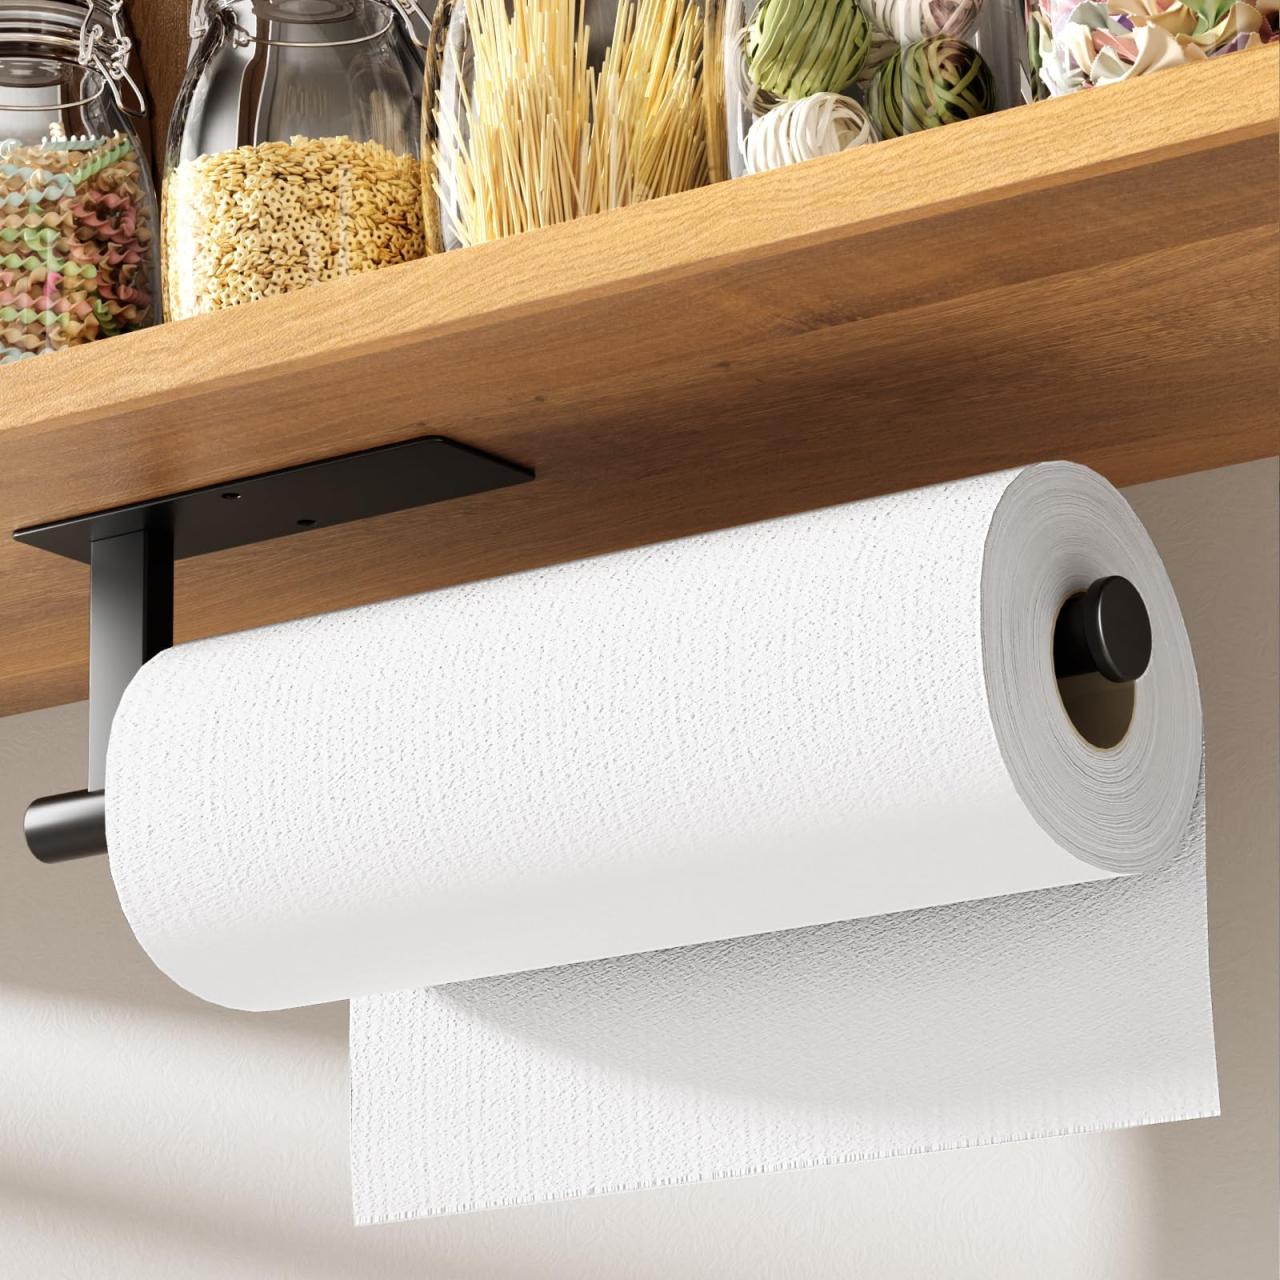 Kitsure Paper Towel Holder Under Cabinet